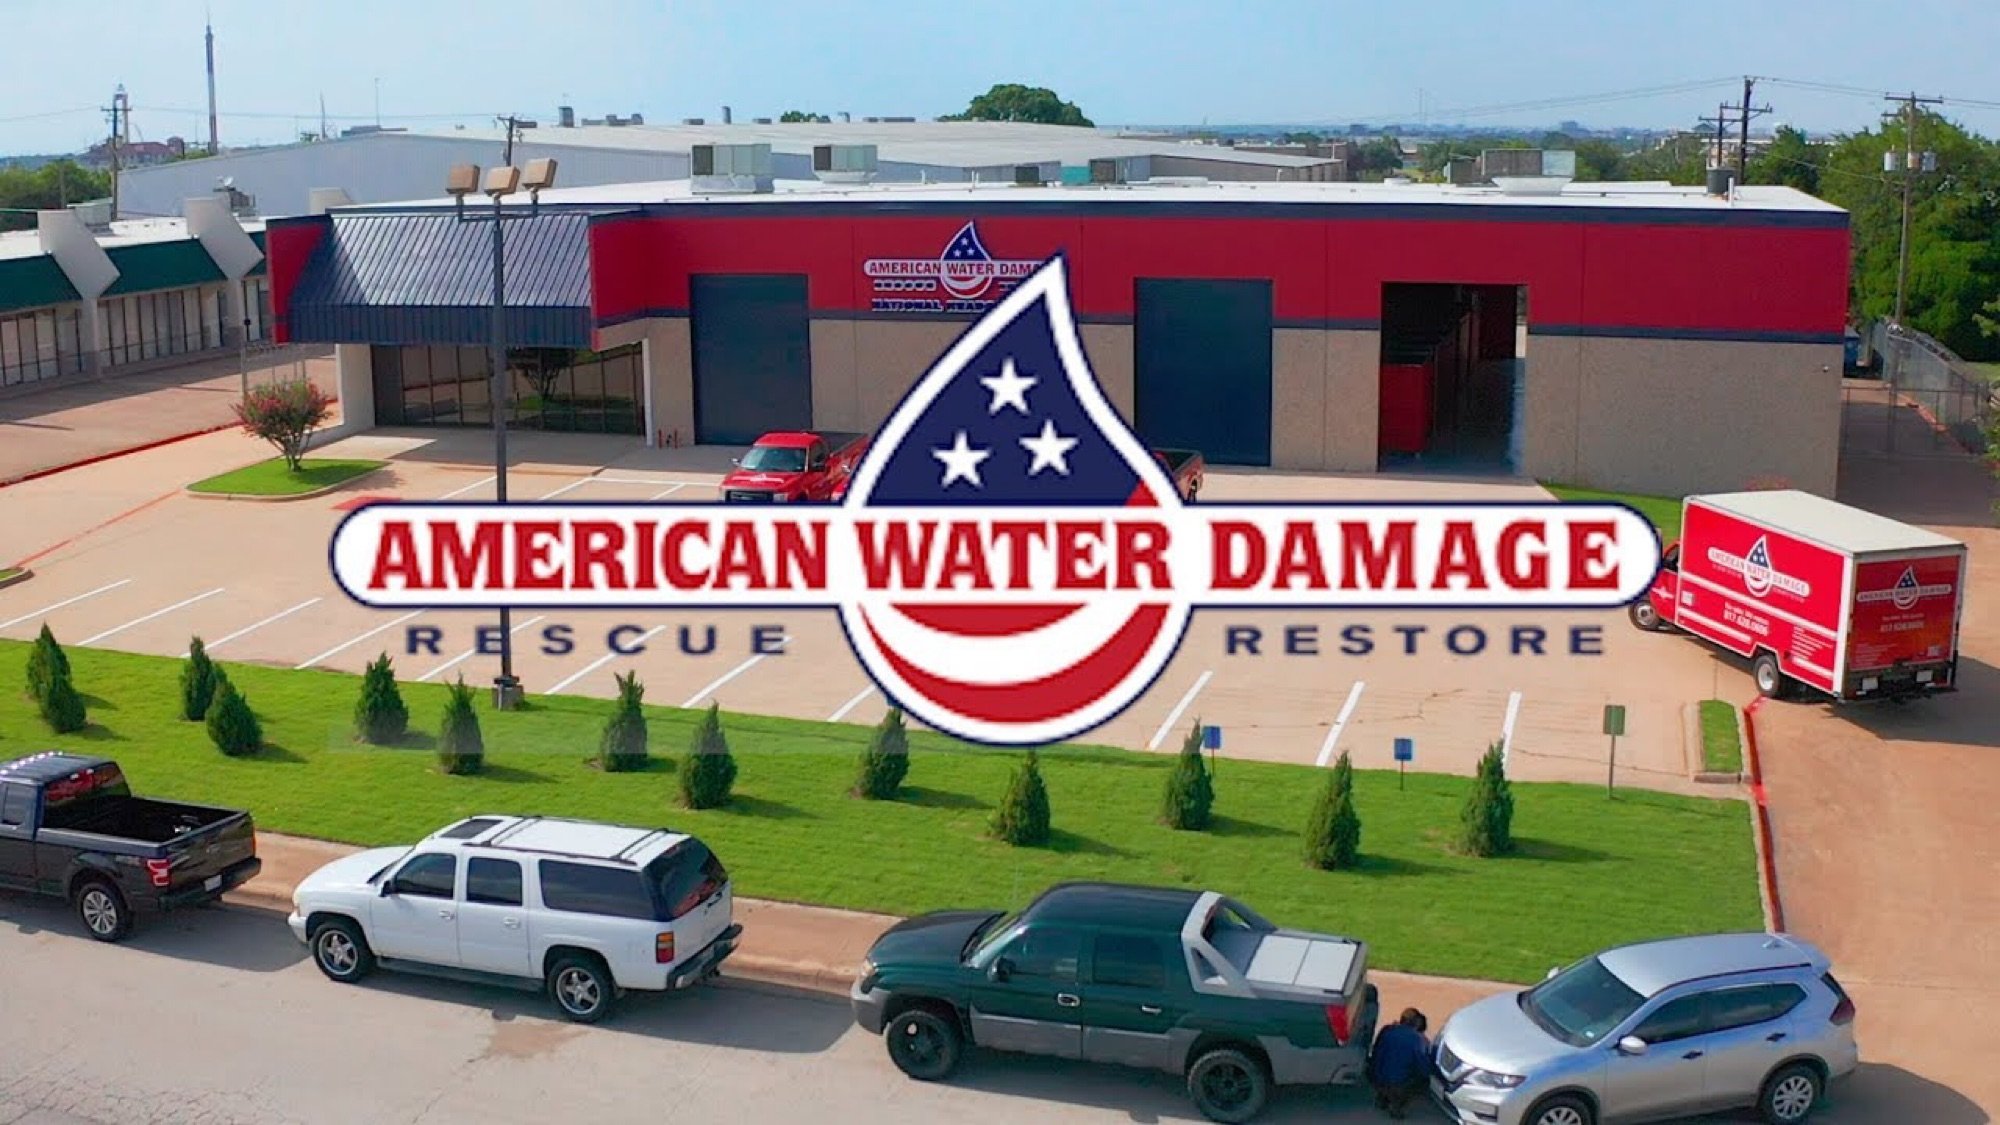 American Water Damage Logo